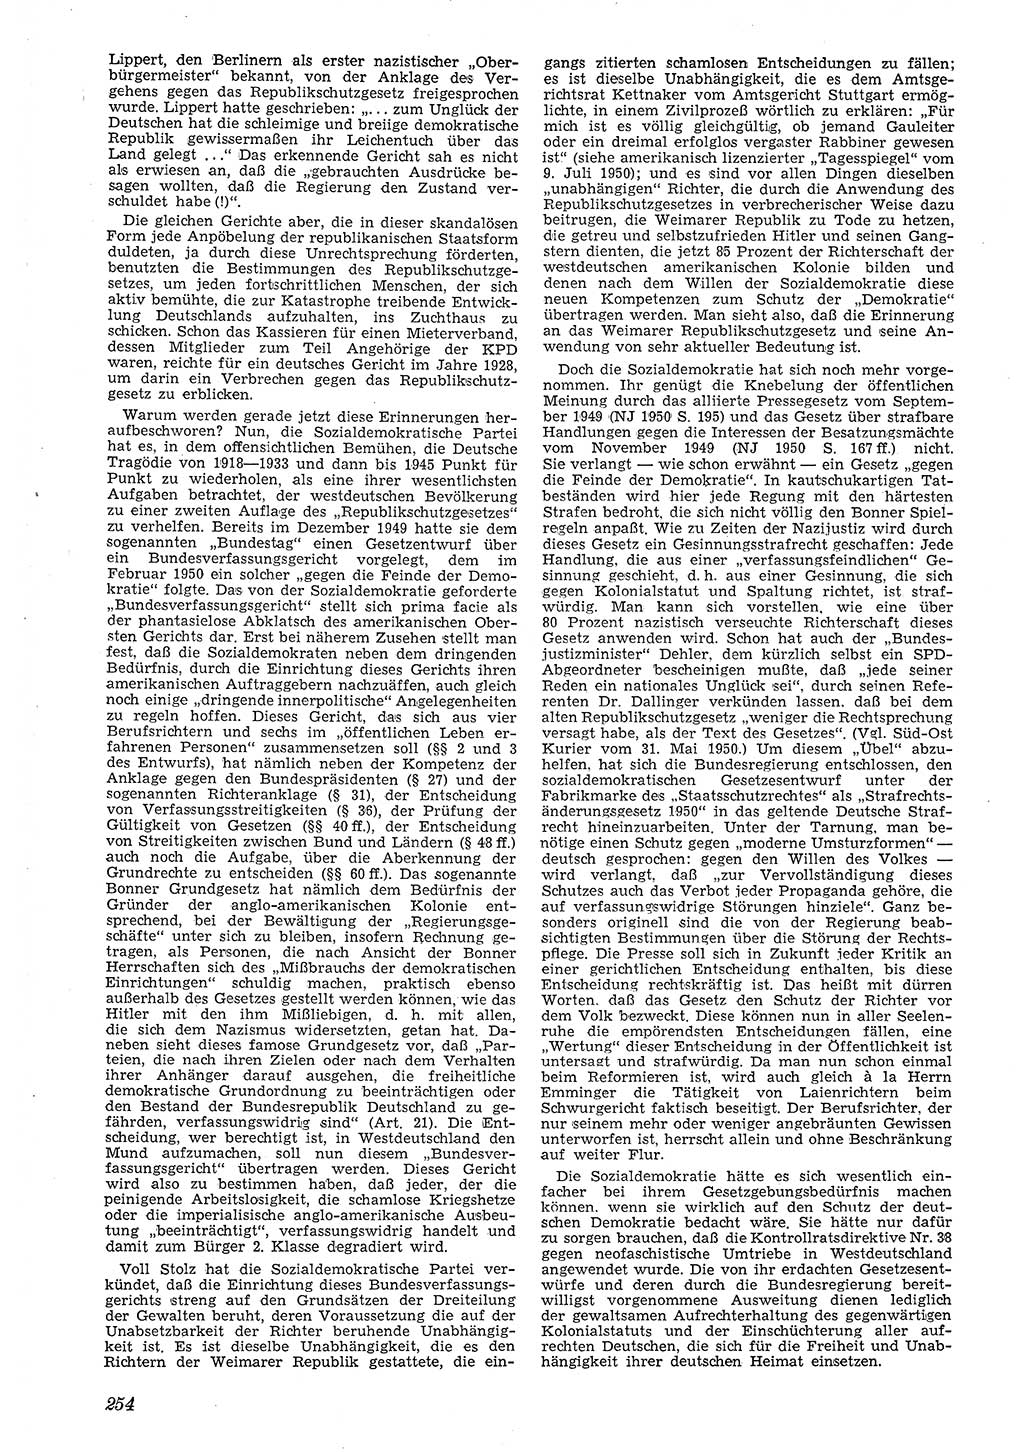 Neue Justiz (NJ), Zeitschrift für Recht und Rechtswissenschaft [Deutsche Demokratische Republik (DDR)], 4. Jahrgang 1950, Seite 254 (NJ DDR 1950, S. 254)